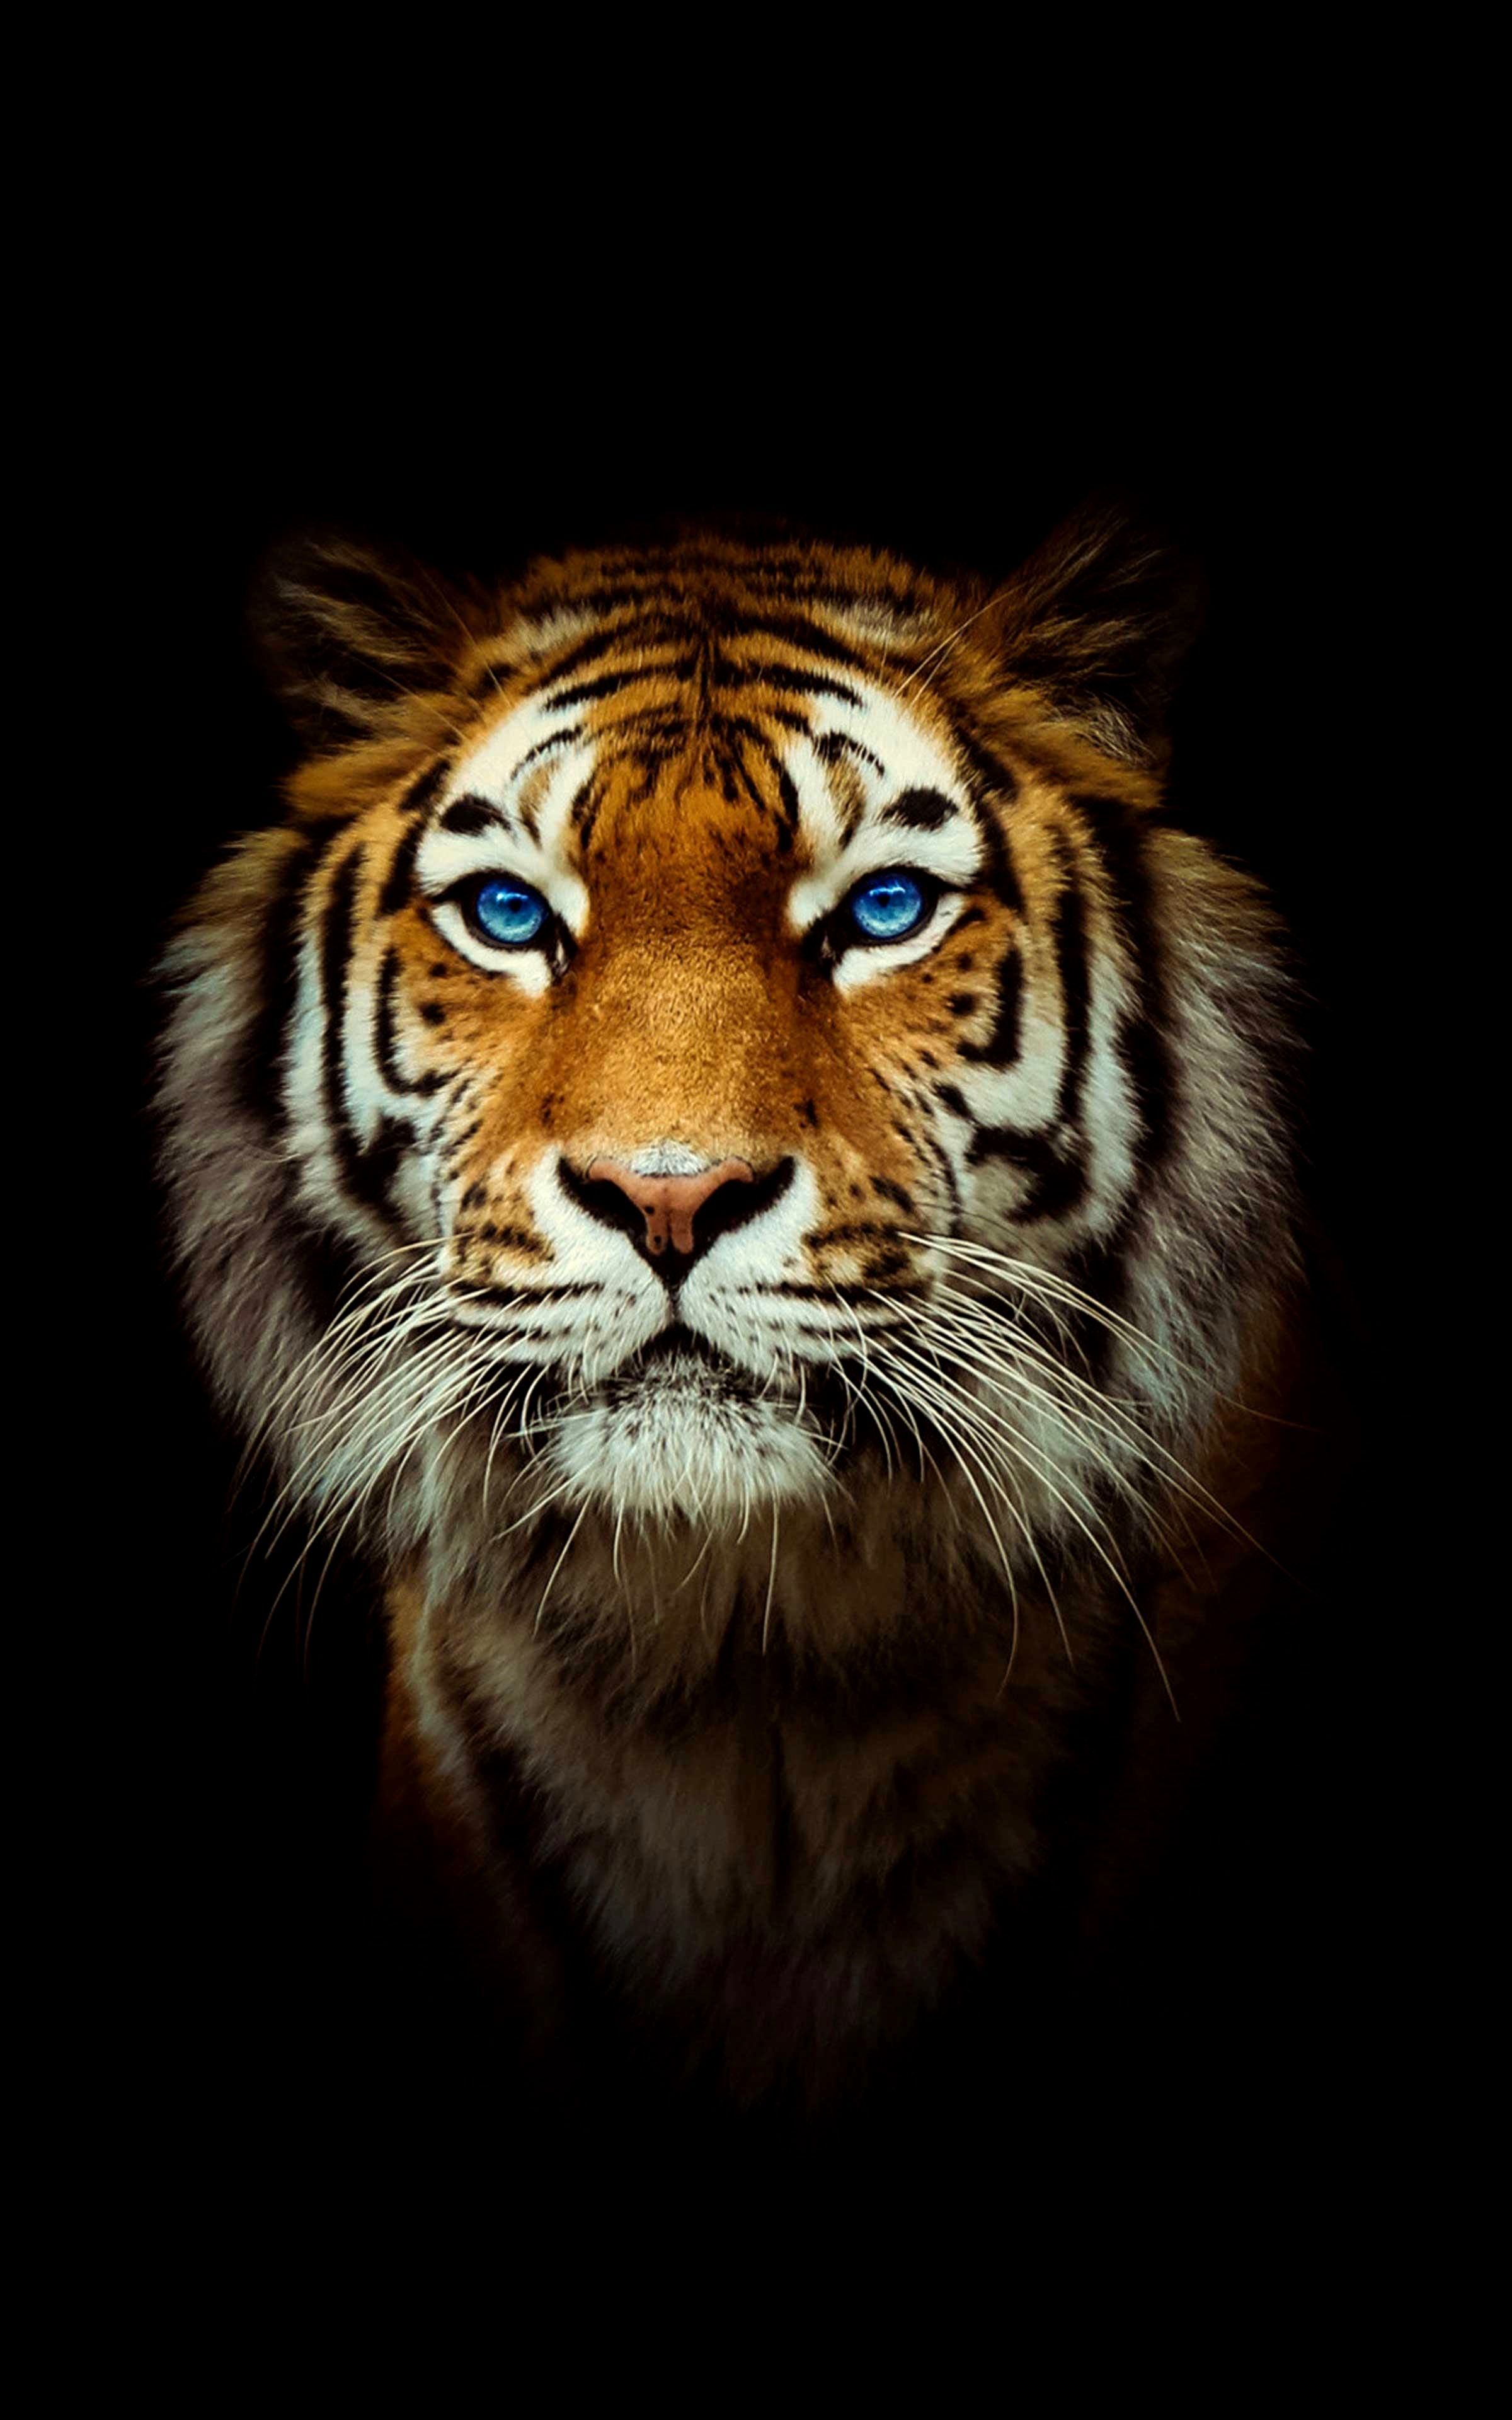 4K Tiger Wallpaper Free 4K Tiger Background